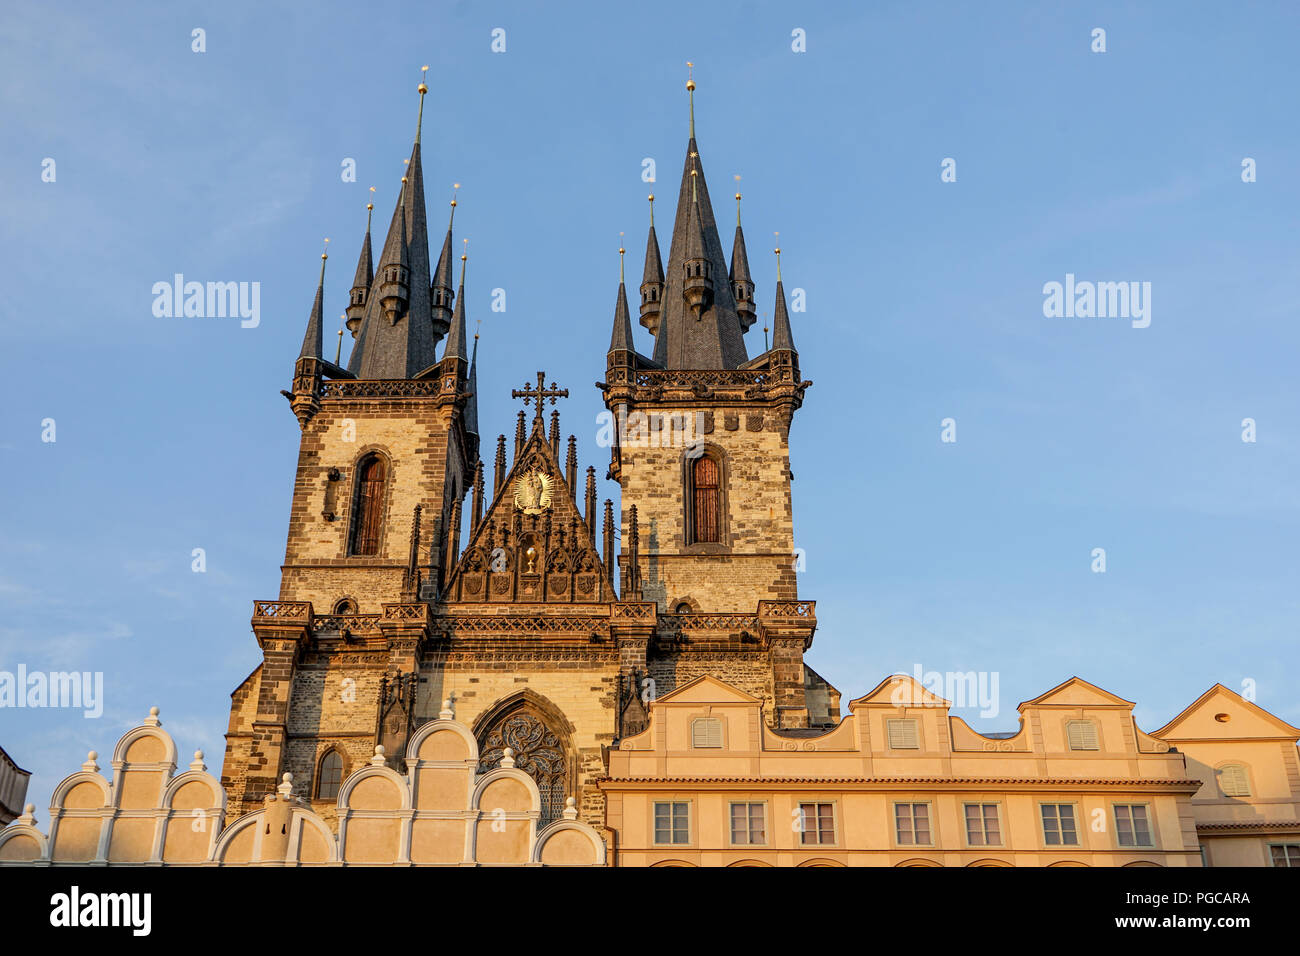 Torres góticas de la iglesia de Týn, en Praga, República Checa Foto de stock